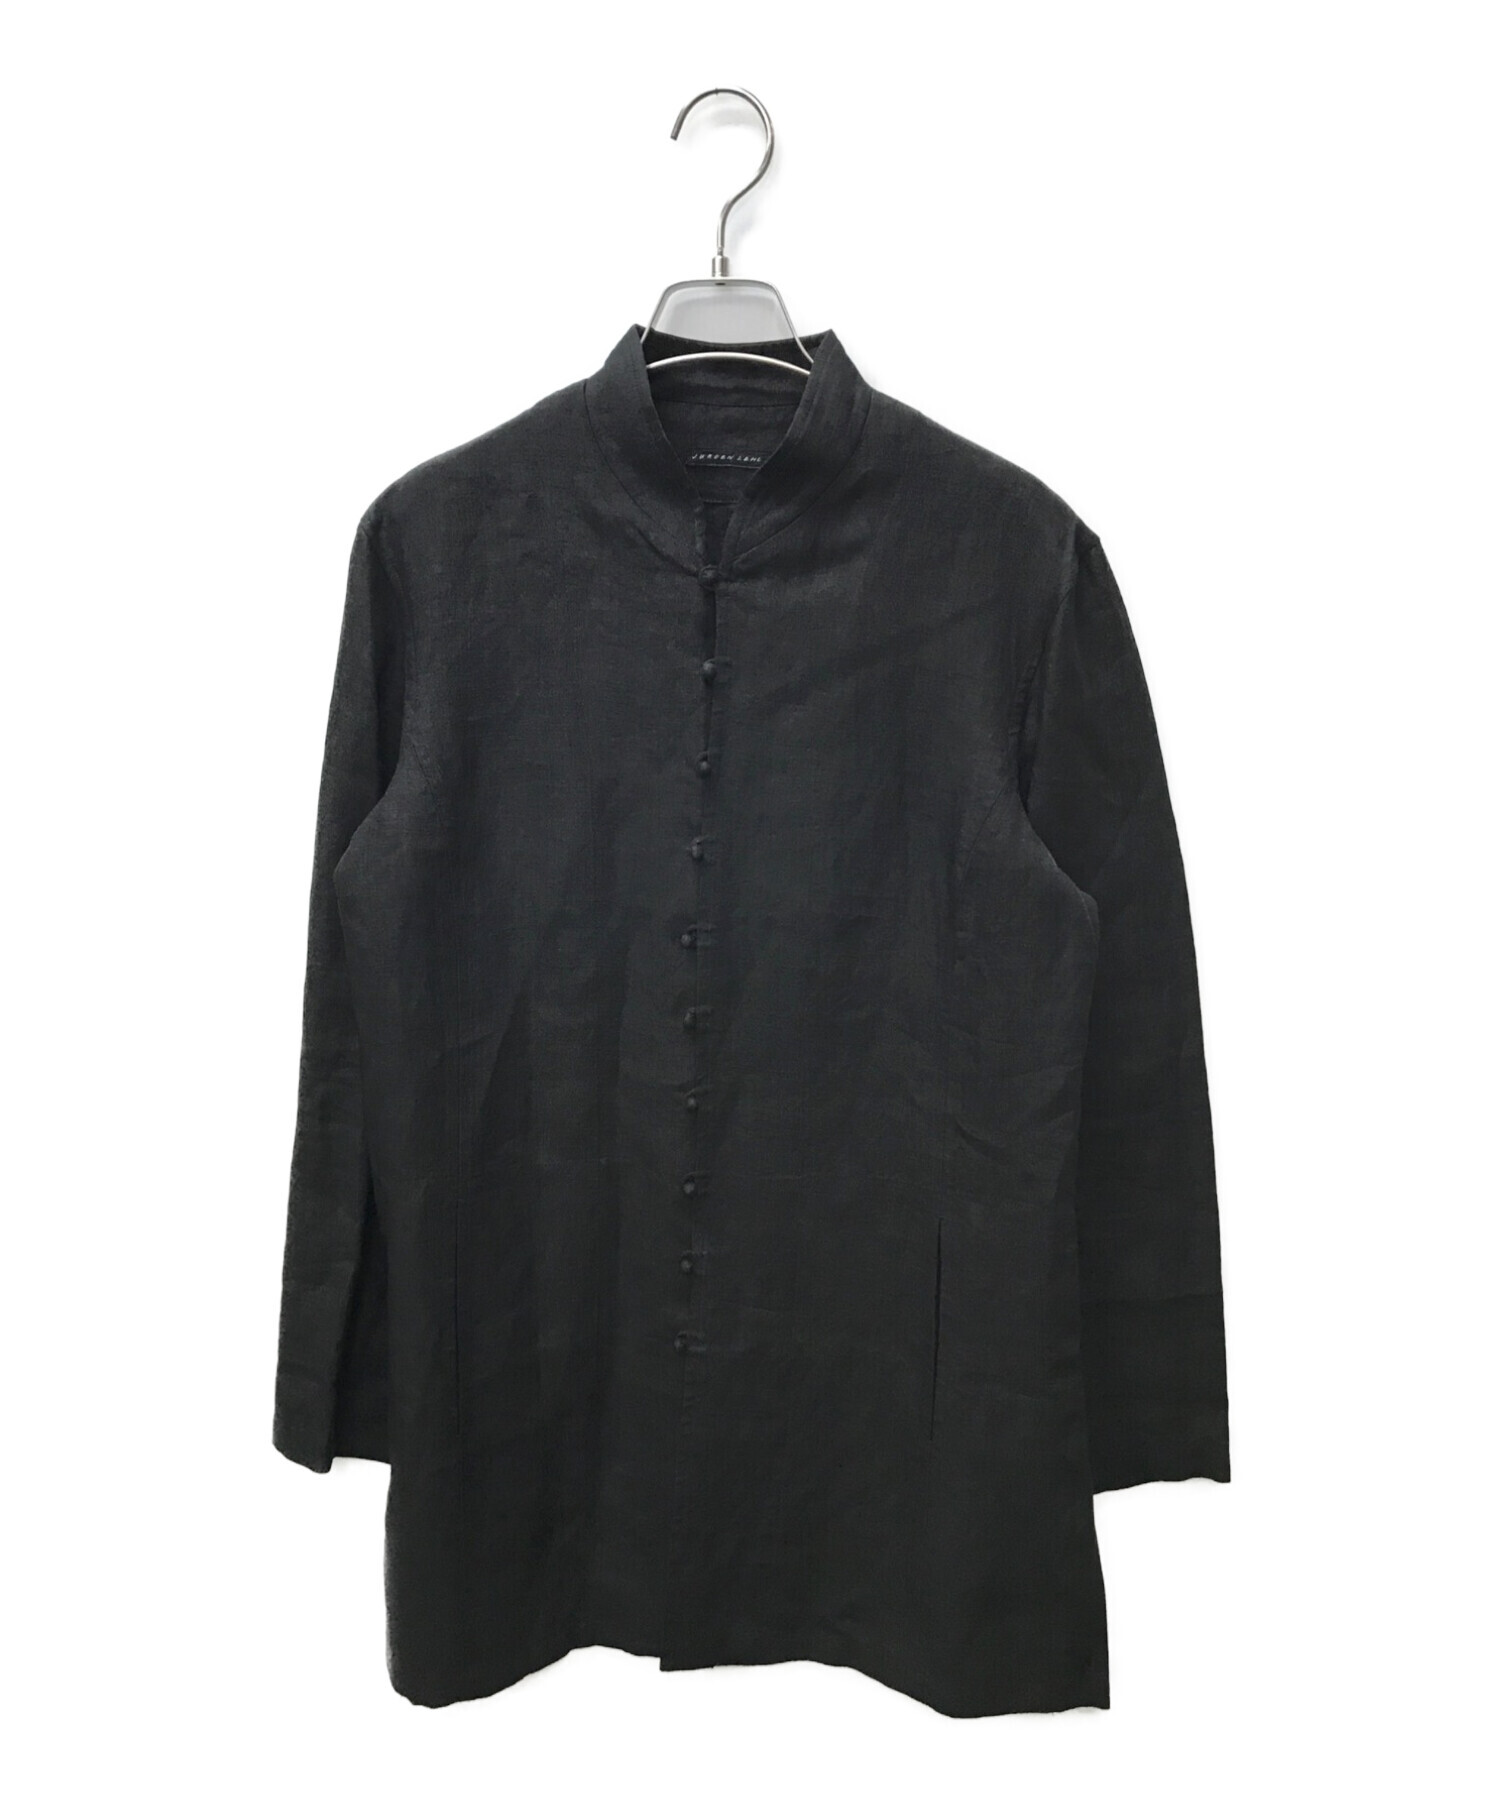 JURGEN LEHL (ヨーガンレール) チャイナリネンシャツ ブラック サイズ:表記なし